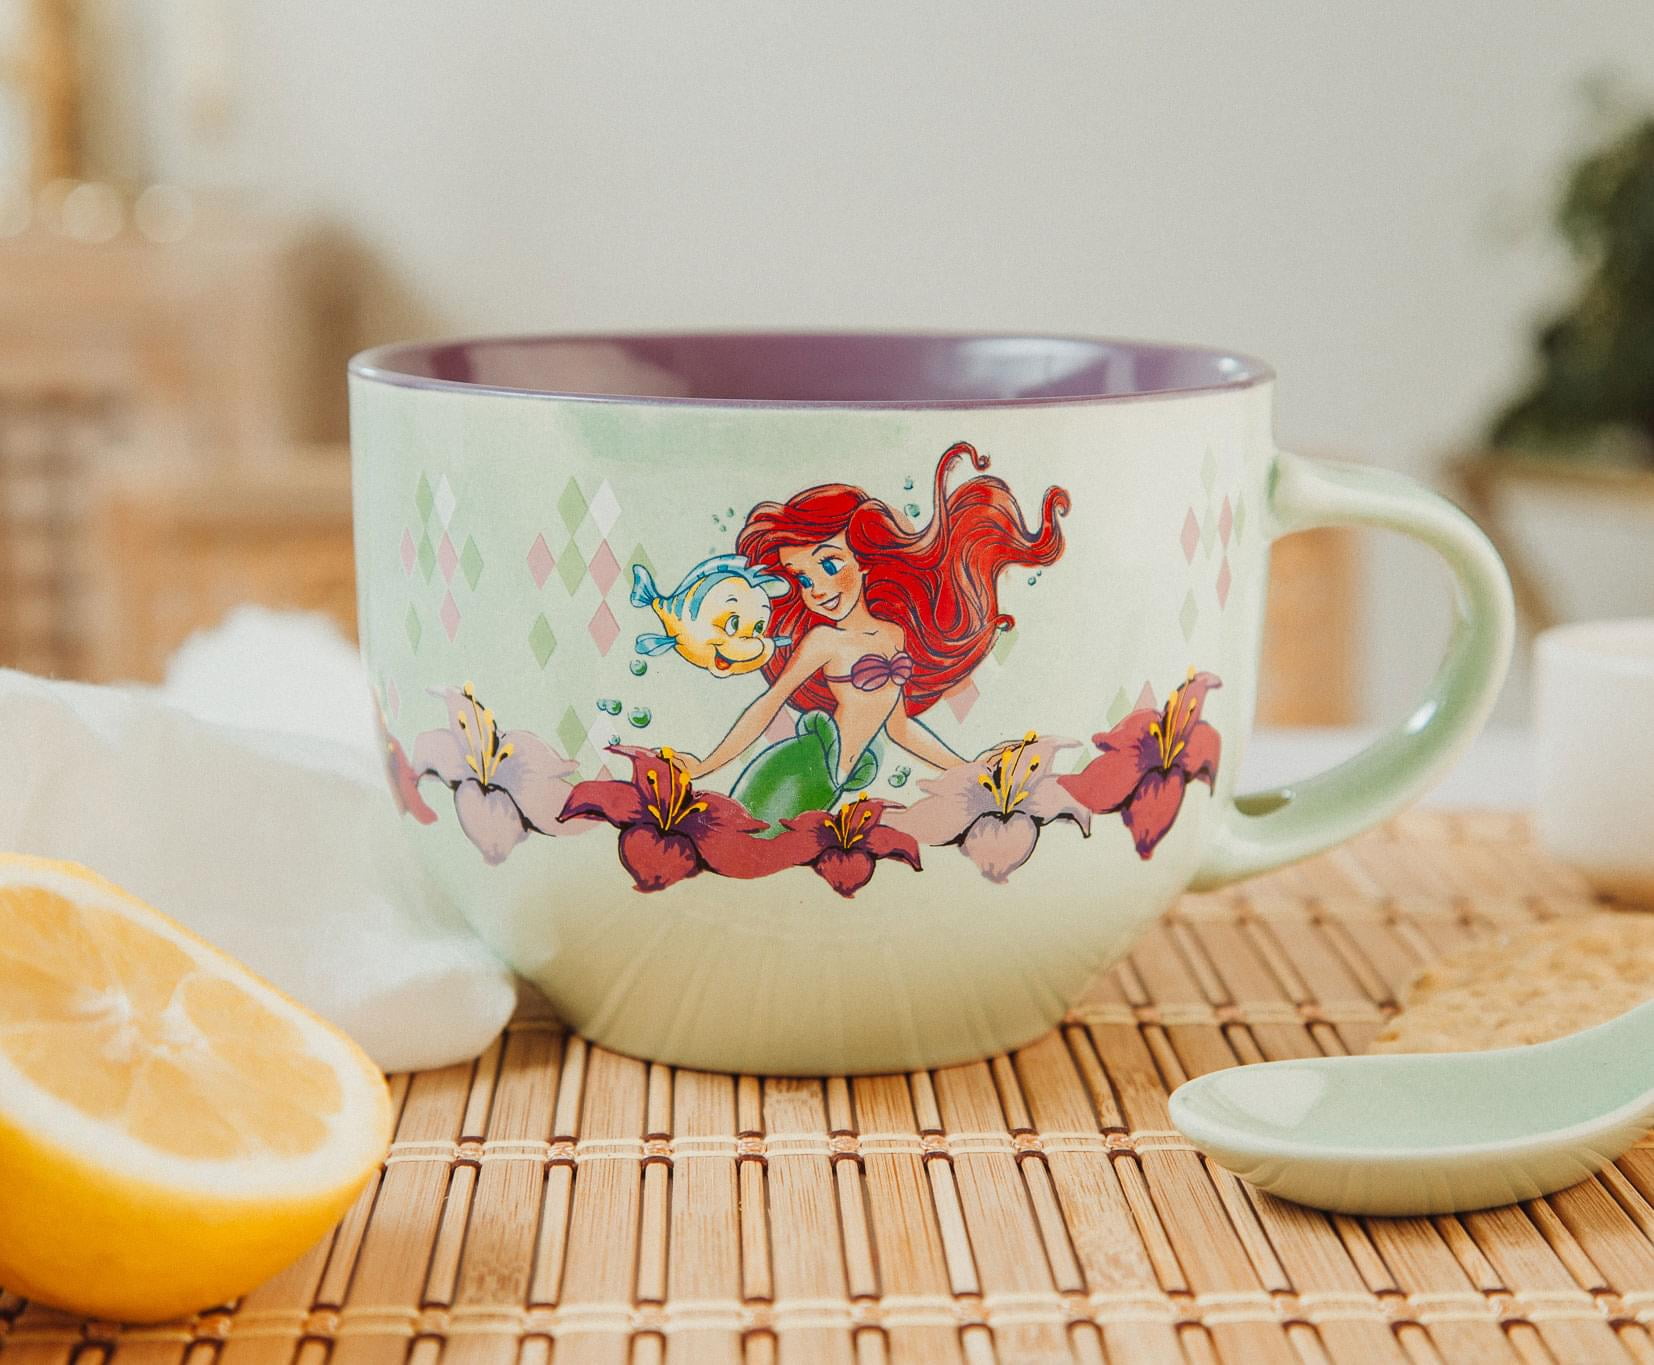 Little Mermaid Coffee Mug by E S Hardy - Pixels